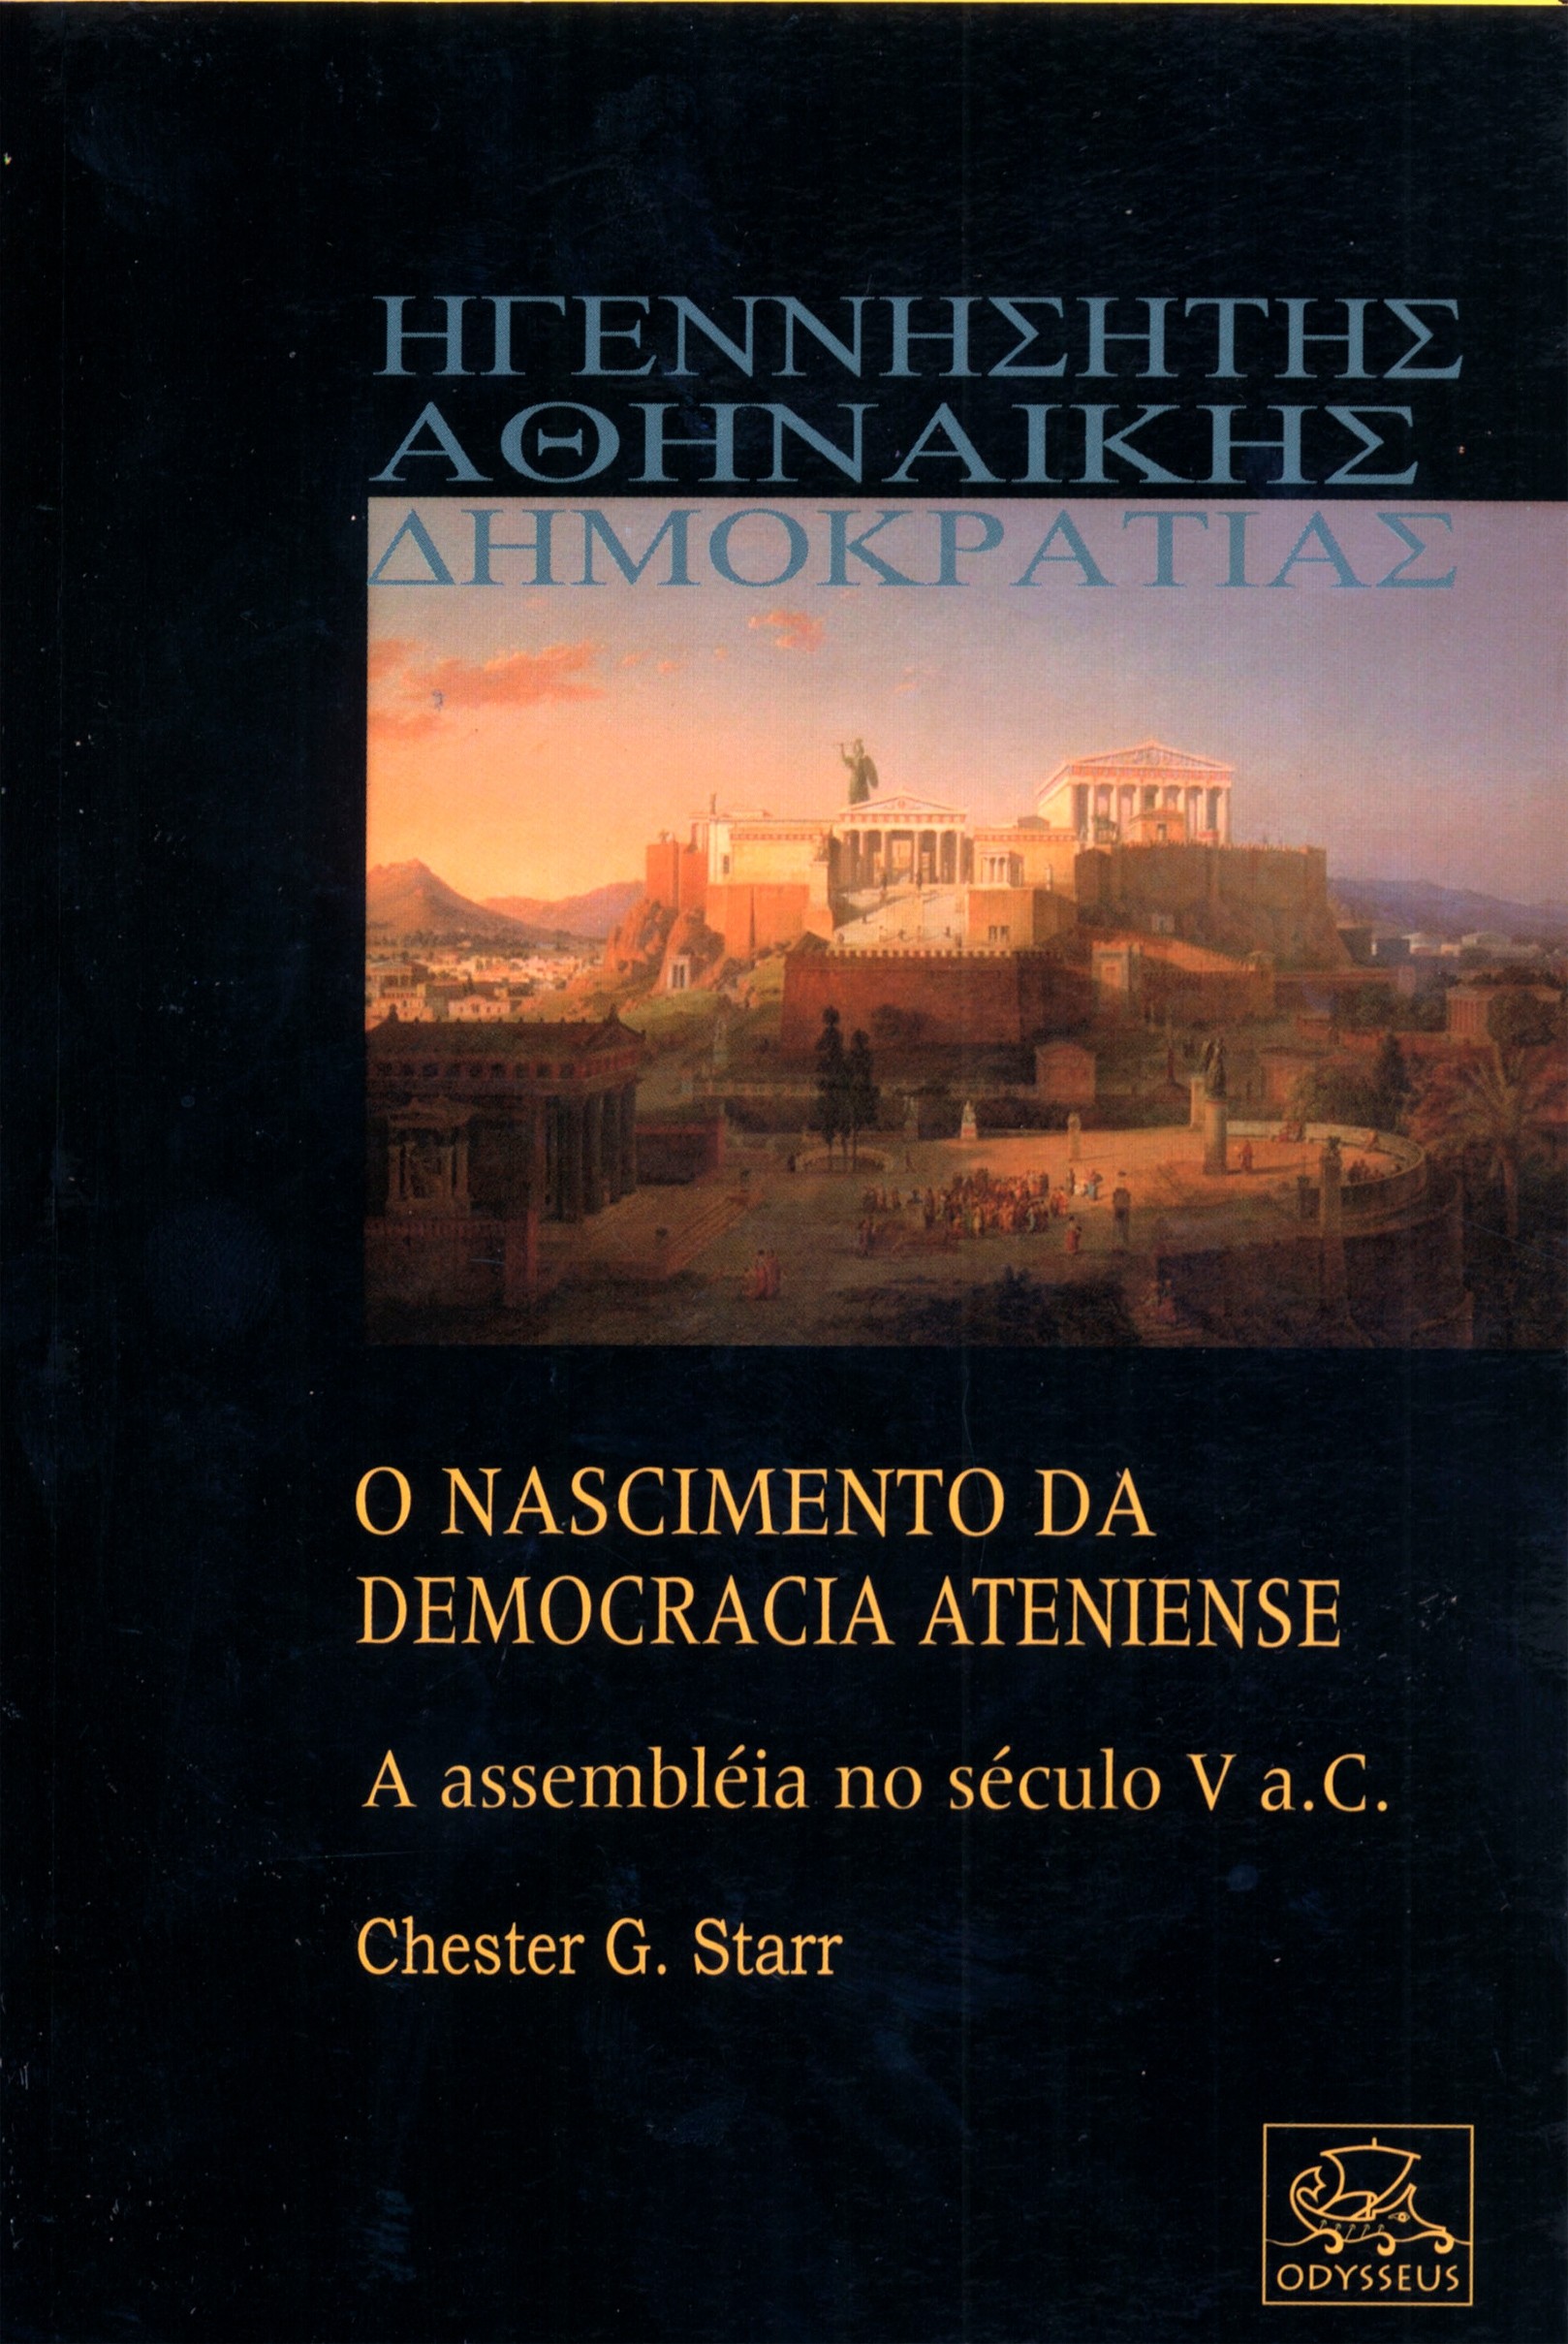 O Nascimento da Democracia Ateniense